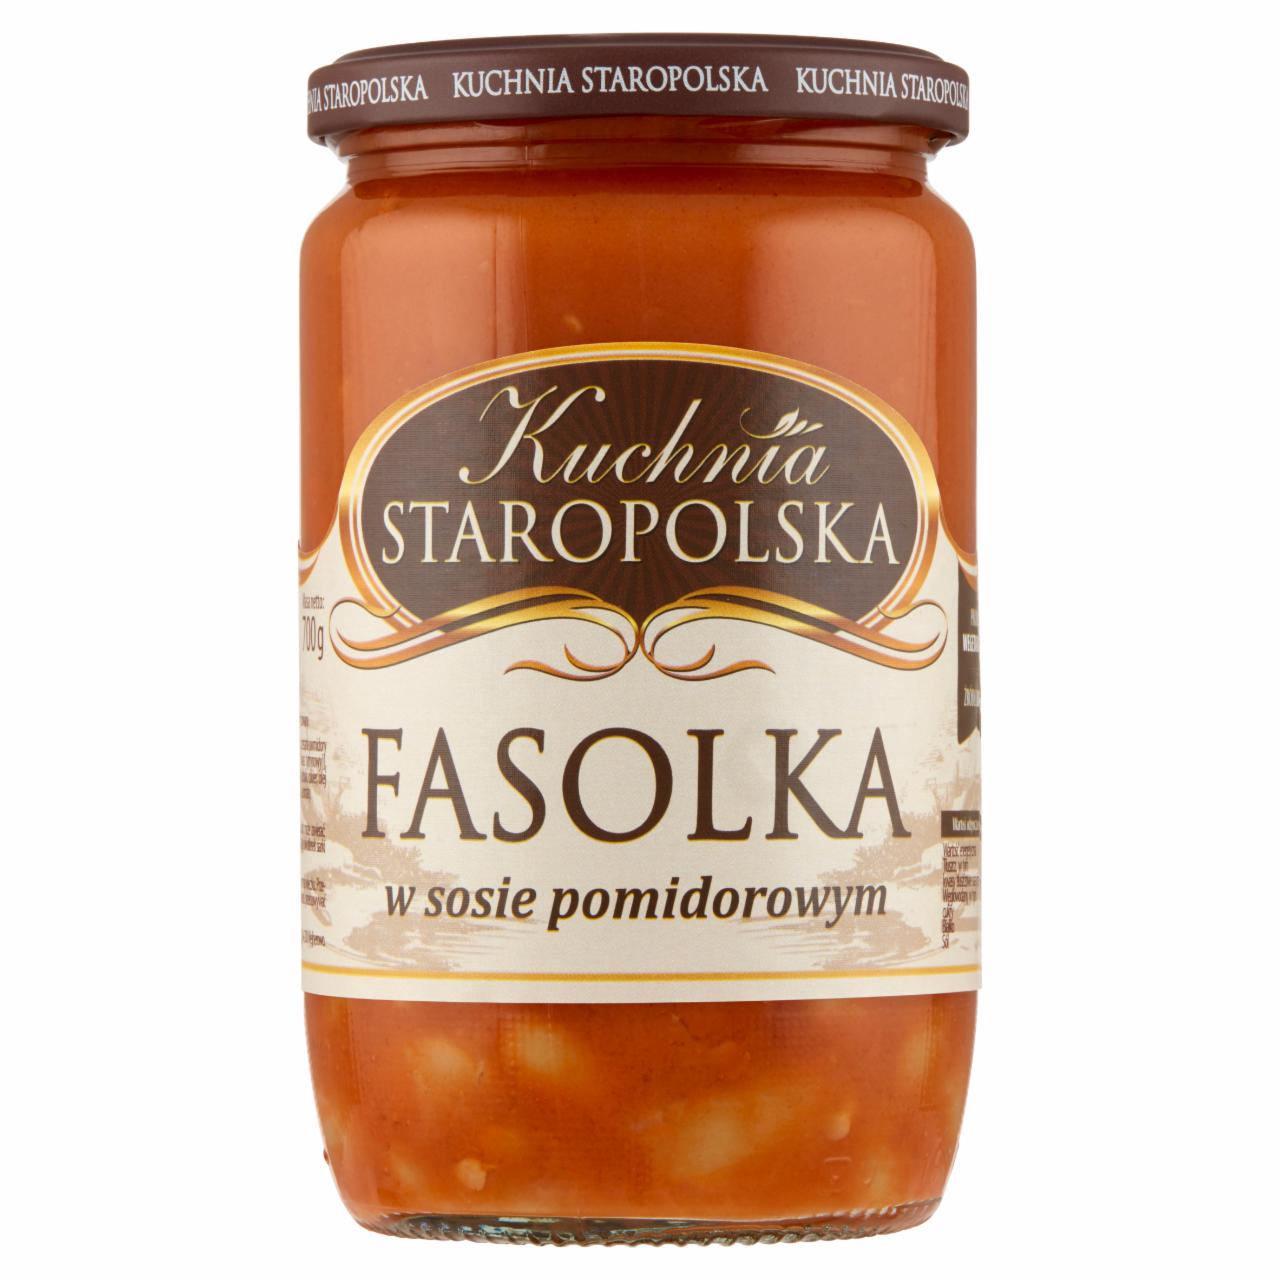 Zdjęcia - Kuchnia Staropolska Fasolka w sosie pomidorowym 700 g